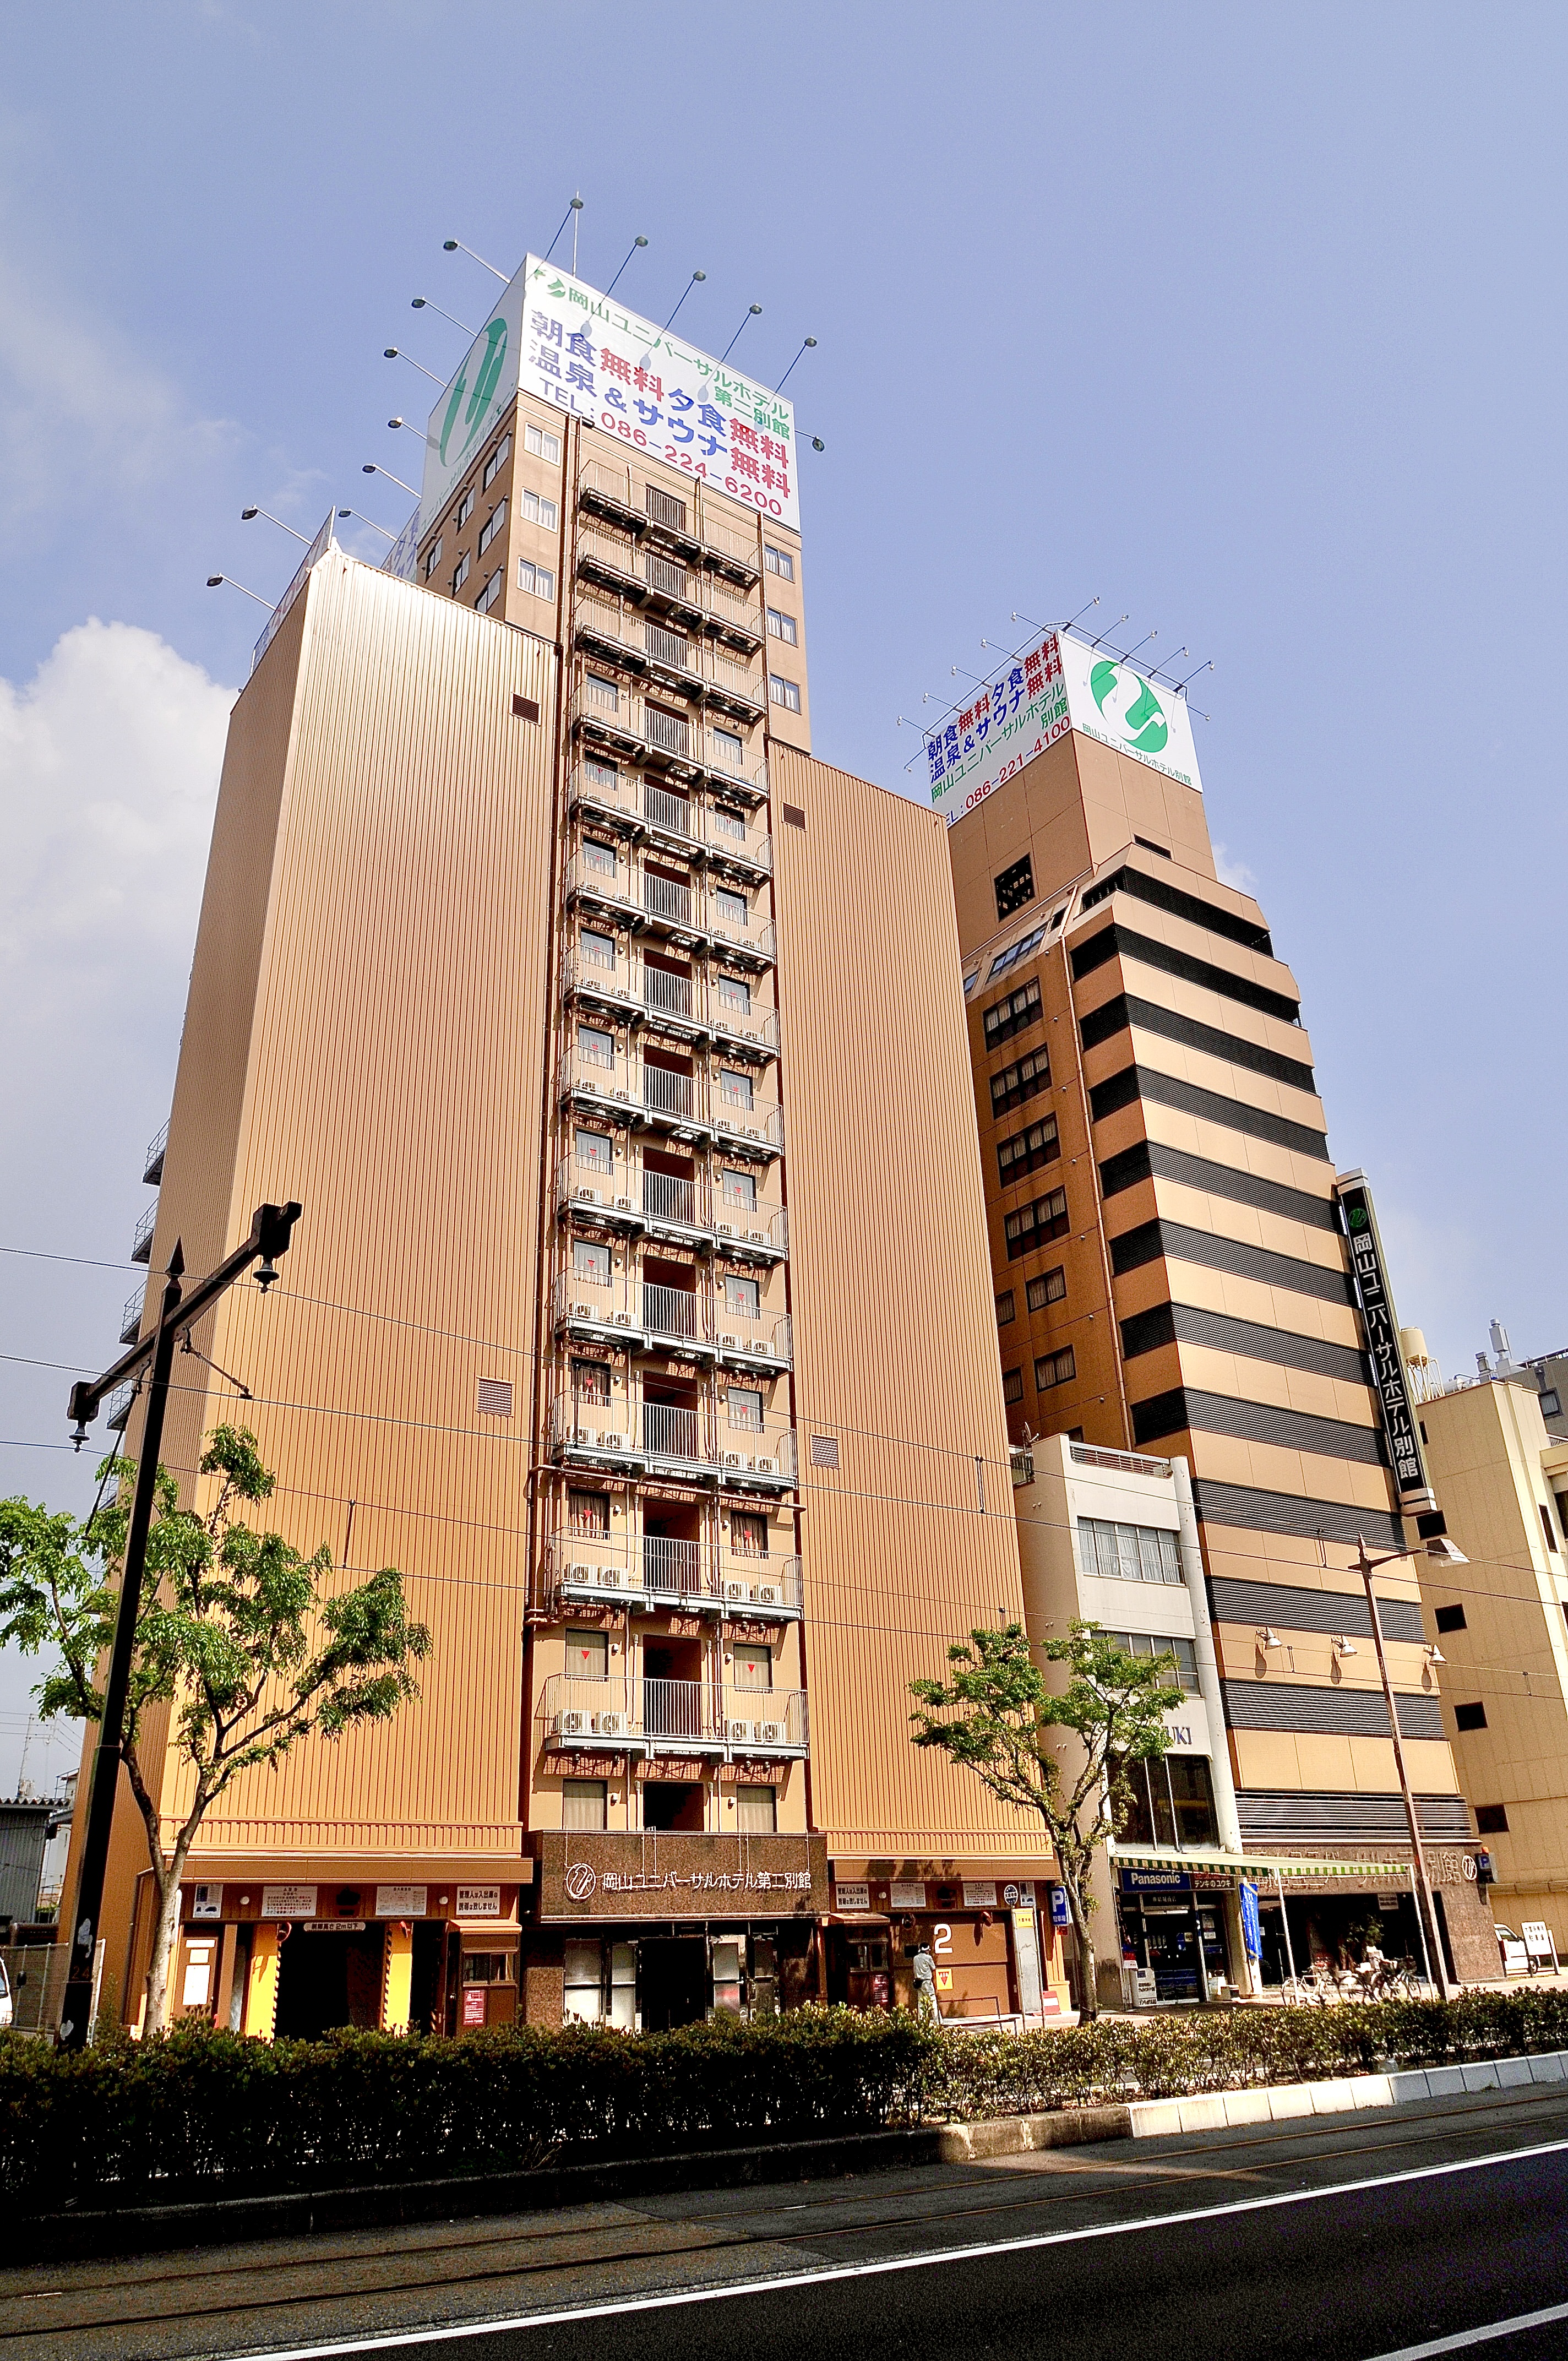 冈山环球酒店第二别馆